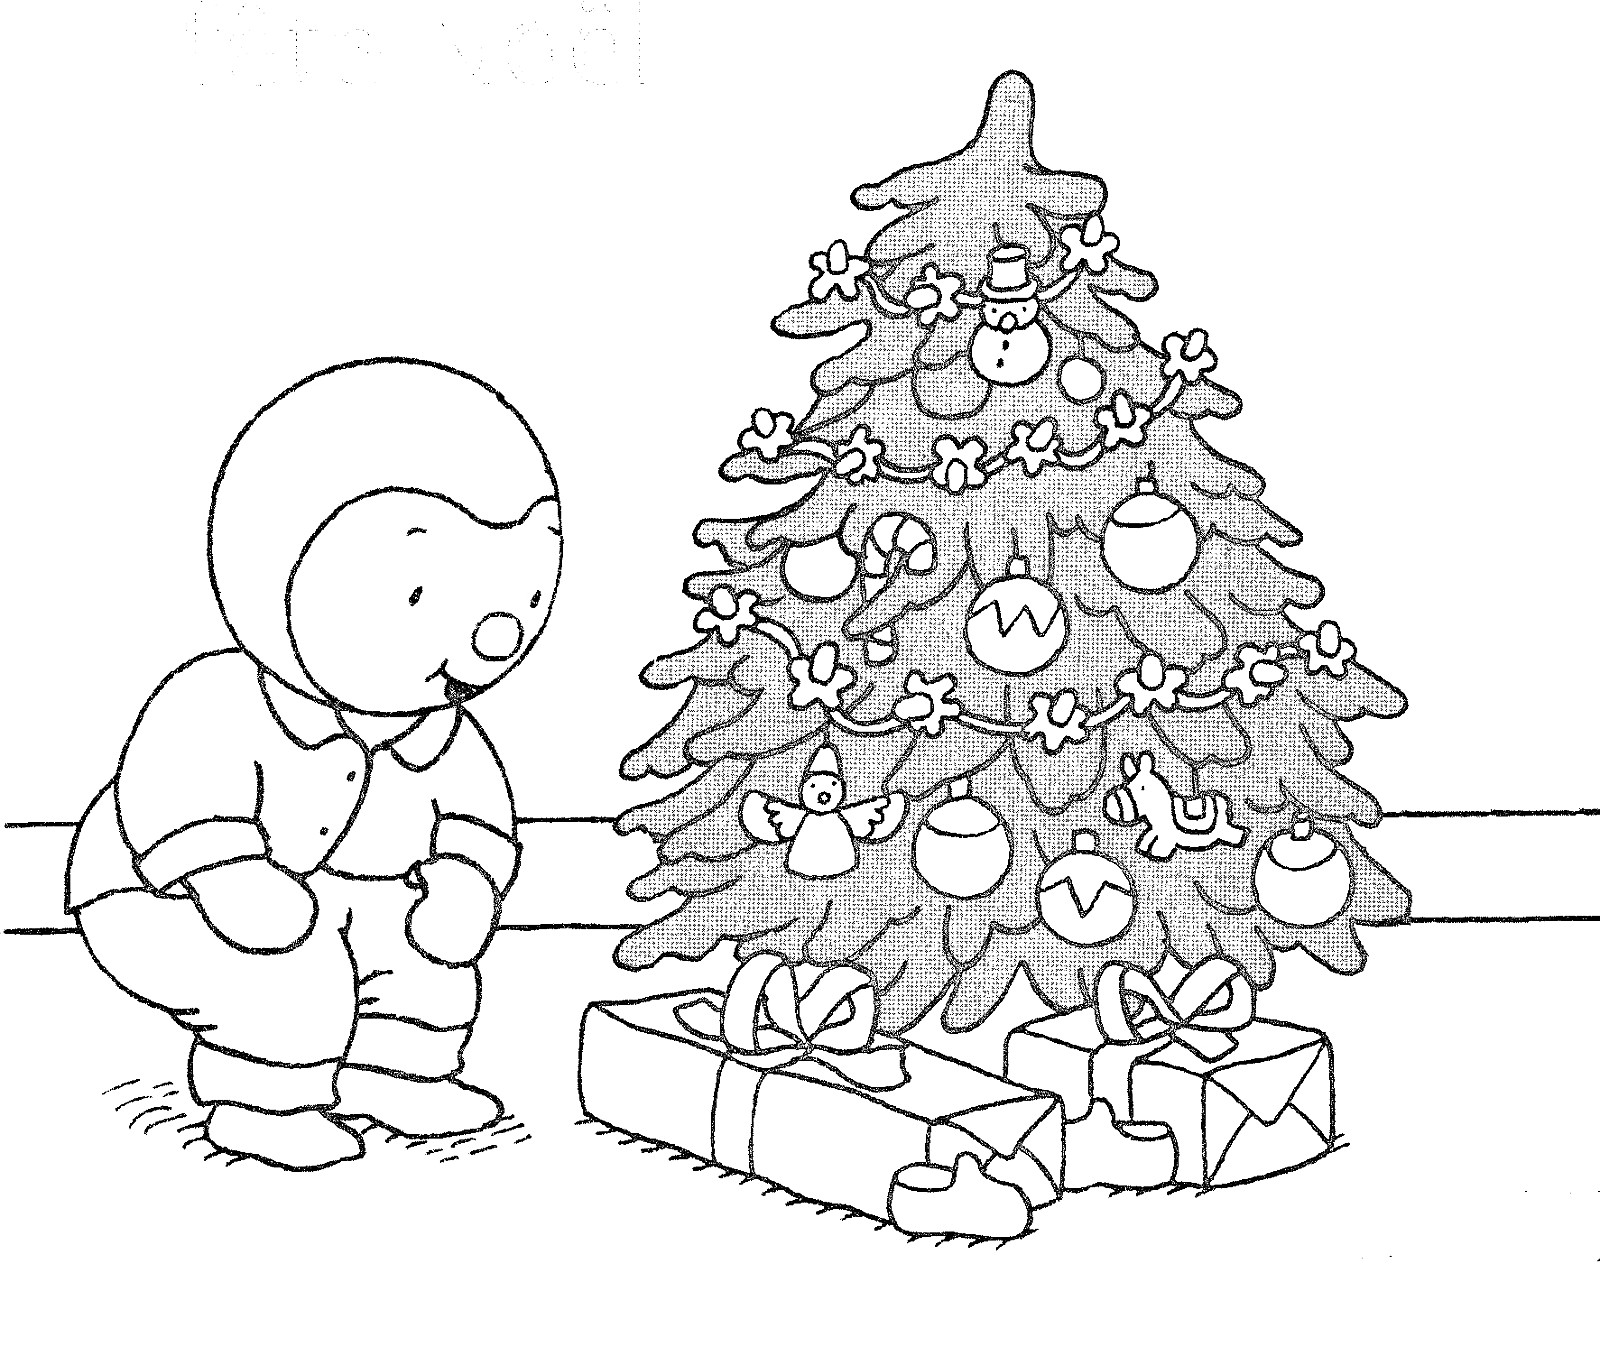 T'choupi celebra la Navidad bajo el árbol: ¡tiene muchos regalos!